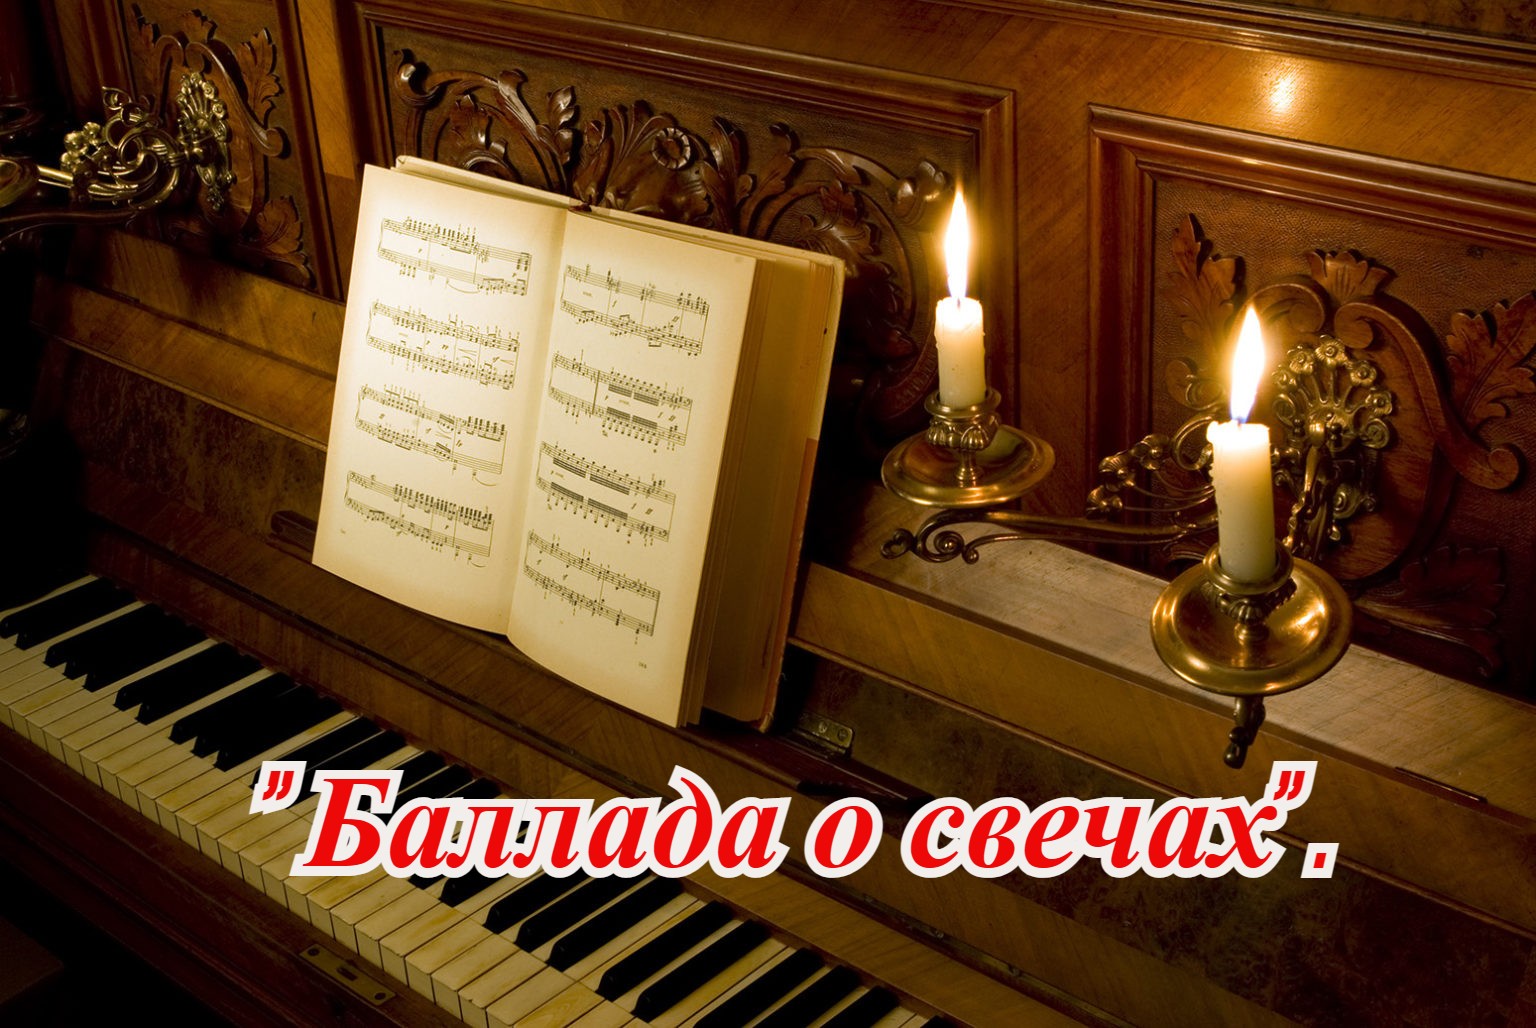 Баллада о свечах. Сгорая плачут свечи(ex/NM). Музыка и свечи Царицыно.